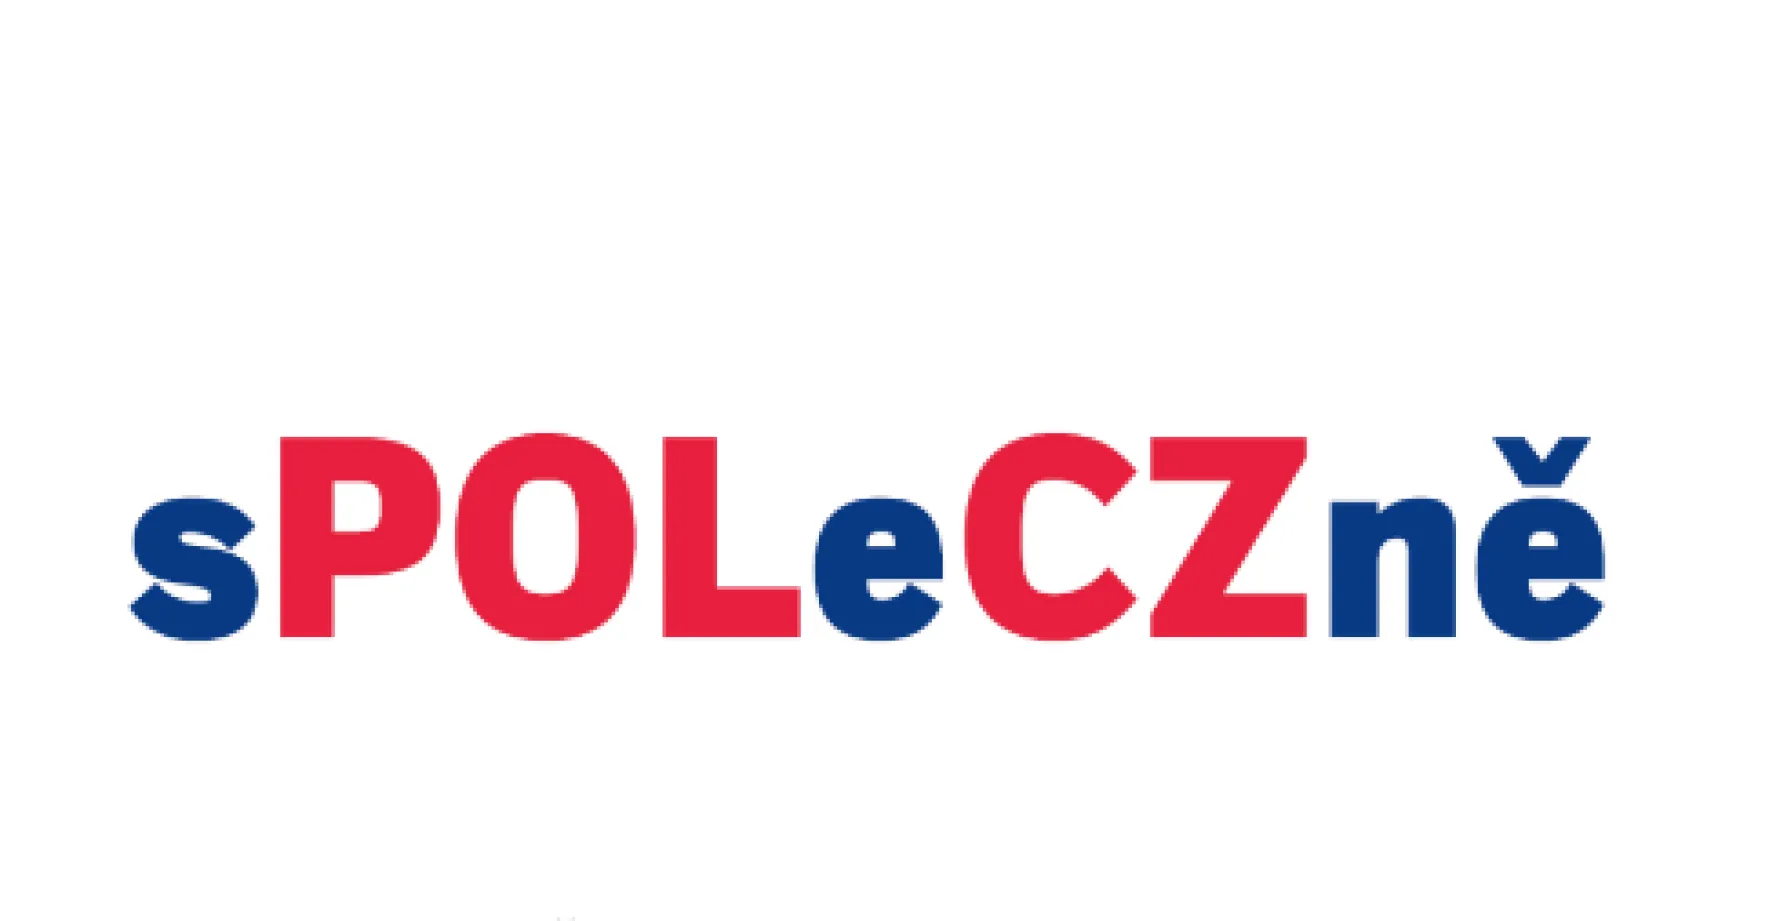 Praha hostí česko-polský festival sPOLeCZně